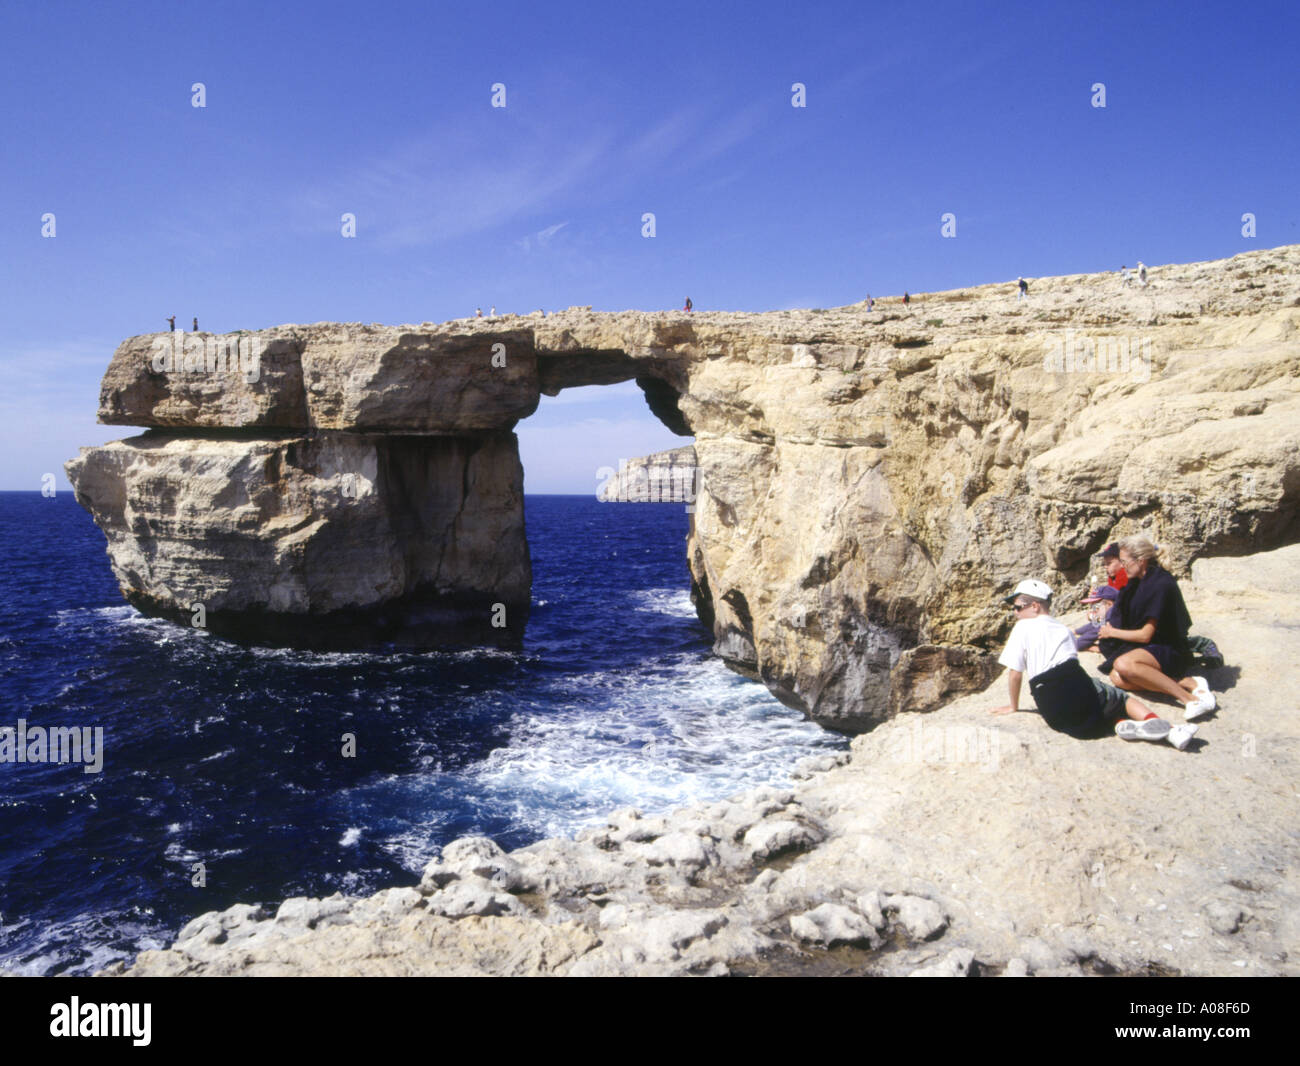 dh Azure Window DWEJRA POINT GOZO Seacliffs de roche naturelle arch et famille touristique malte mer touristes île bleu ciel Banque D'Images